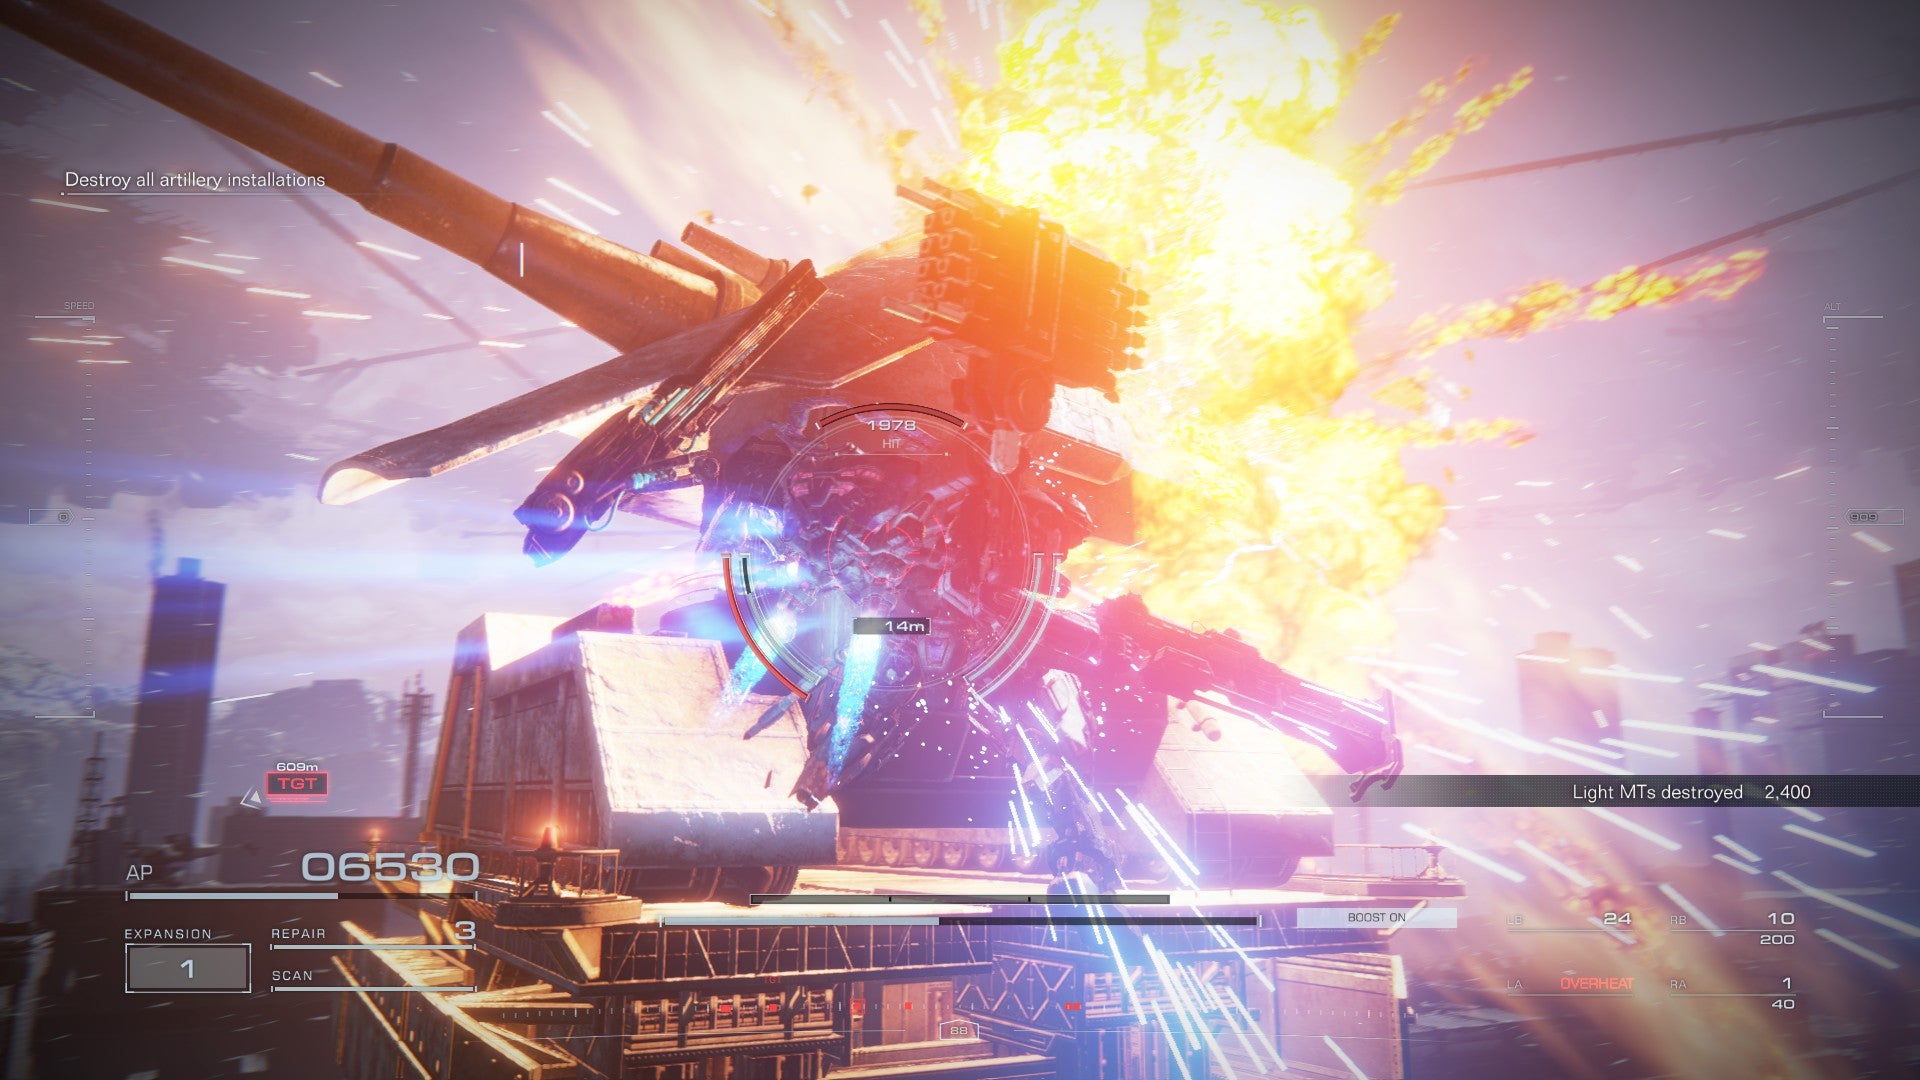 Скриншот игры Armored Core 6, показывающий взрыв огромного артиллерийского орудия.